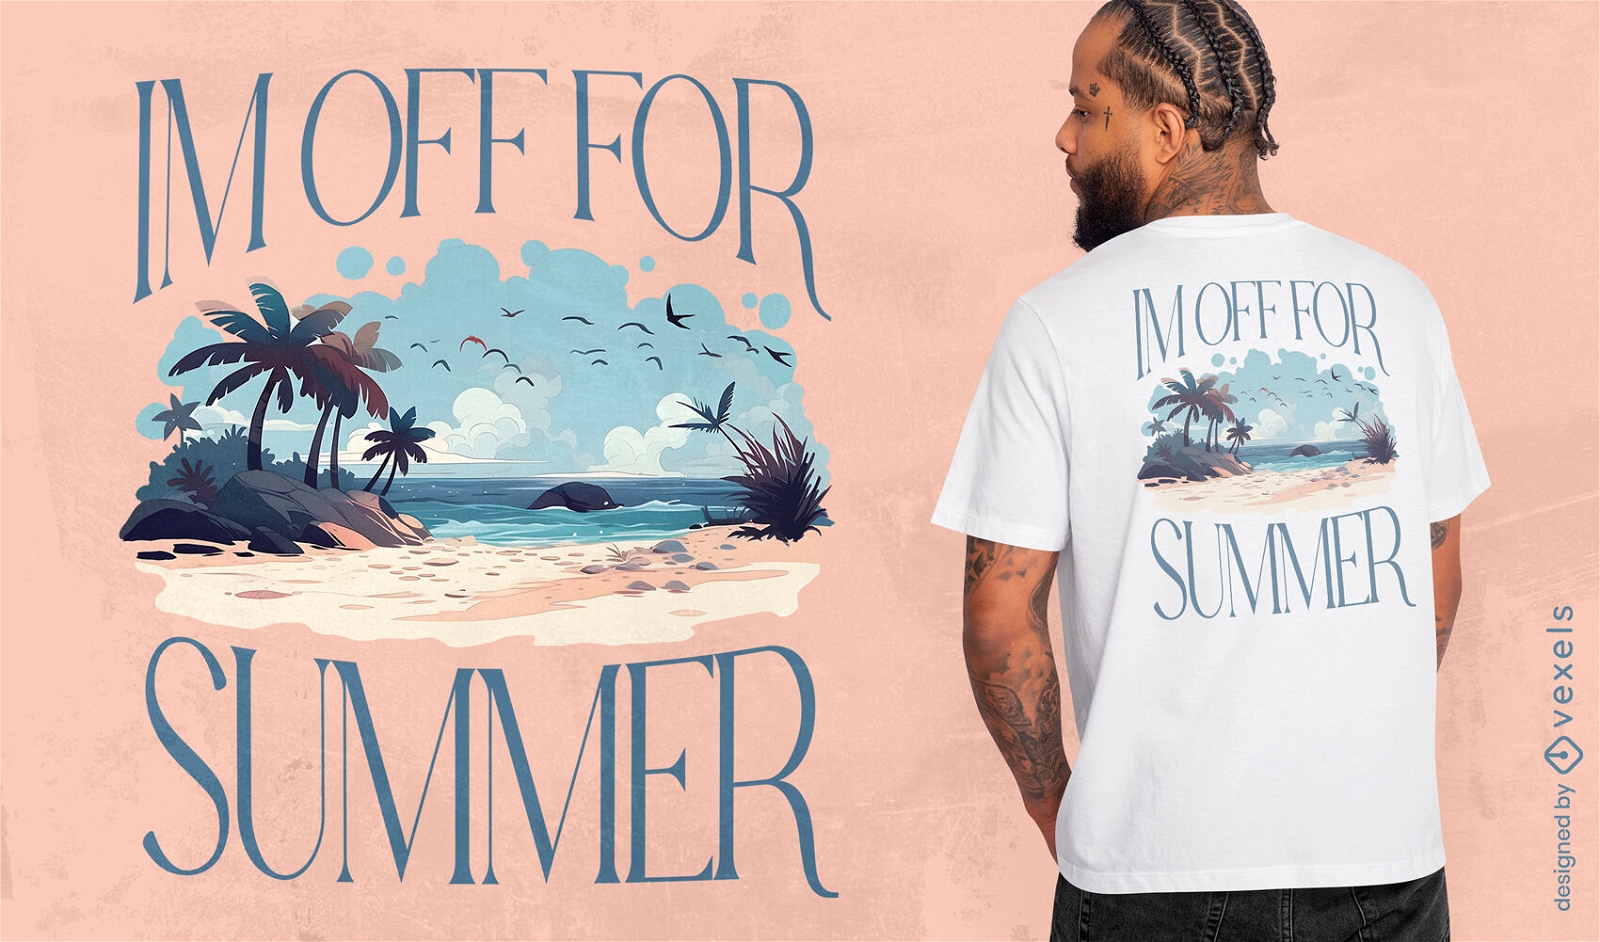 I'm off for summer t-shirt design